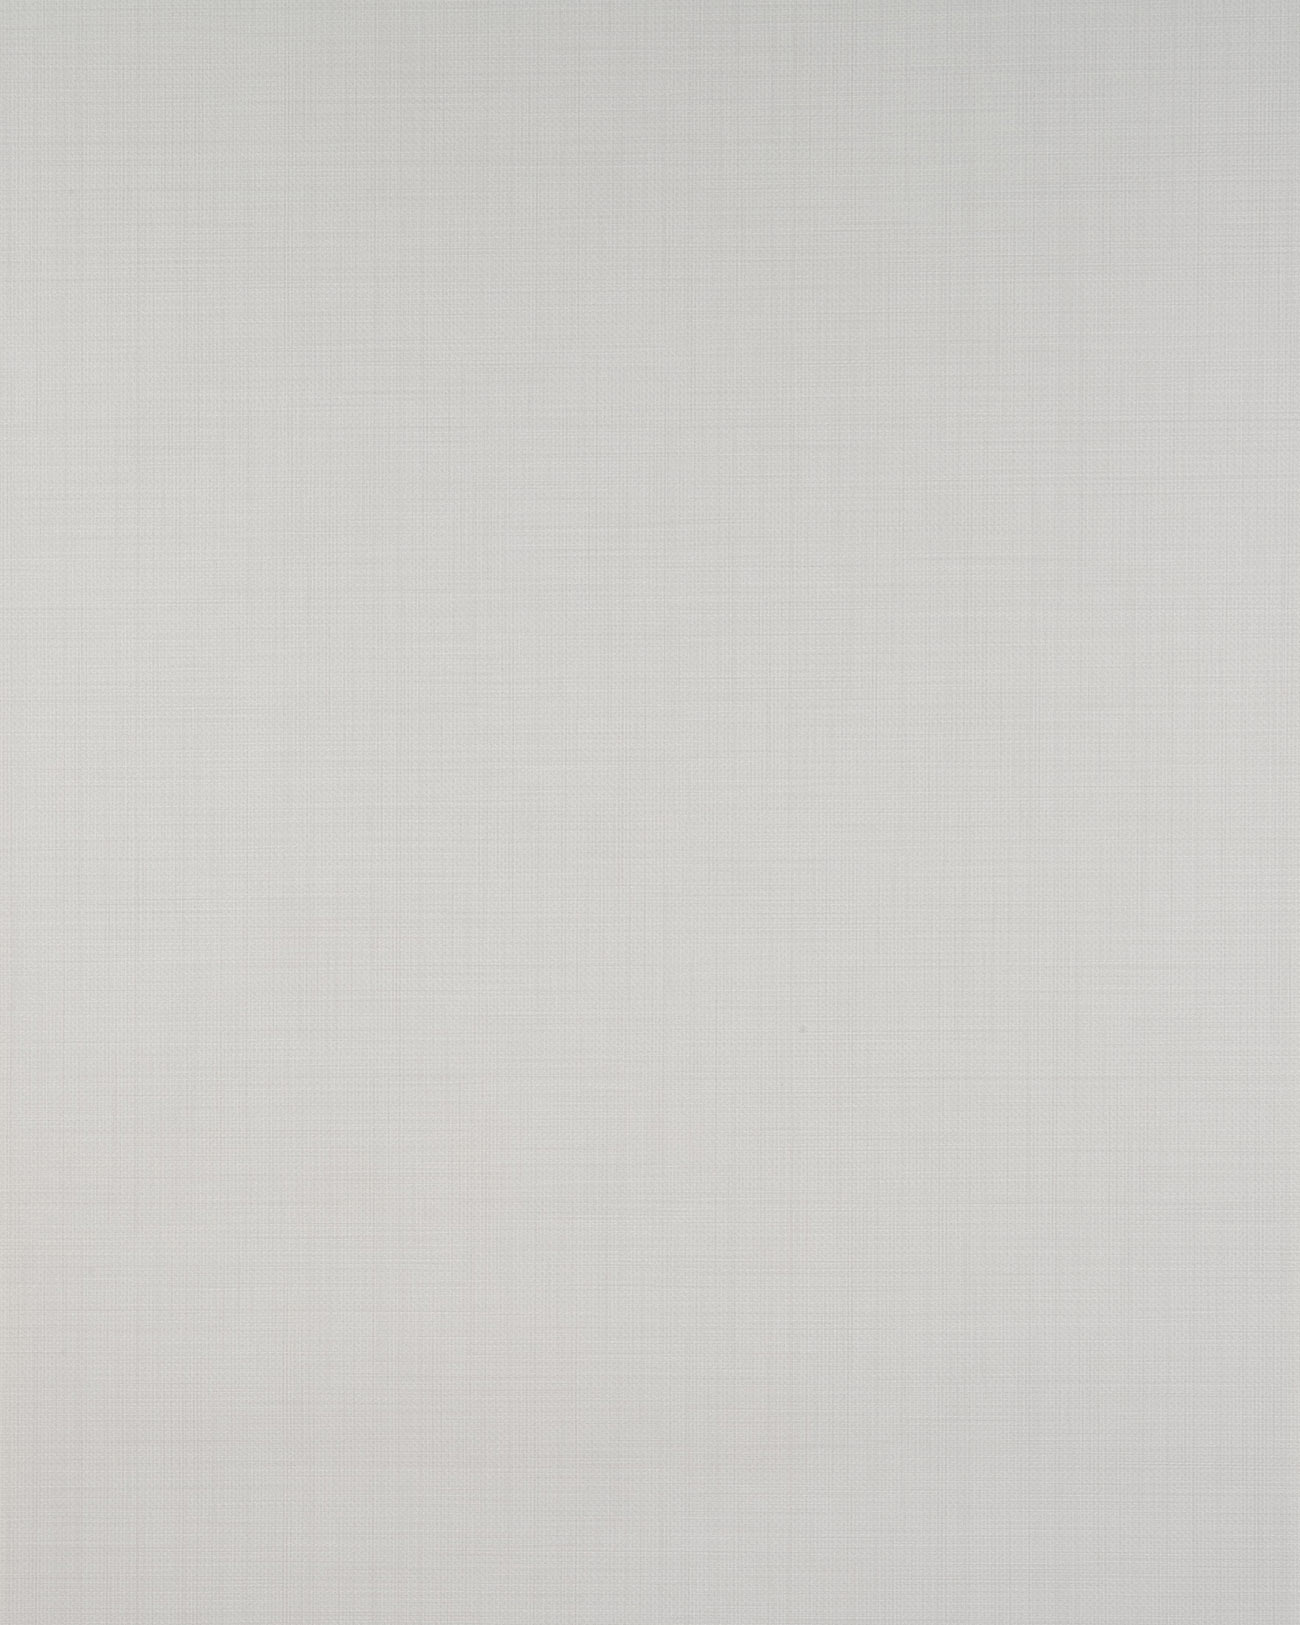 Papier peint unicolor Profhome BV919090-DI papier peint intissé gaufré à chaud texturé unicolor mat blanc 5,33 m2